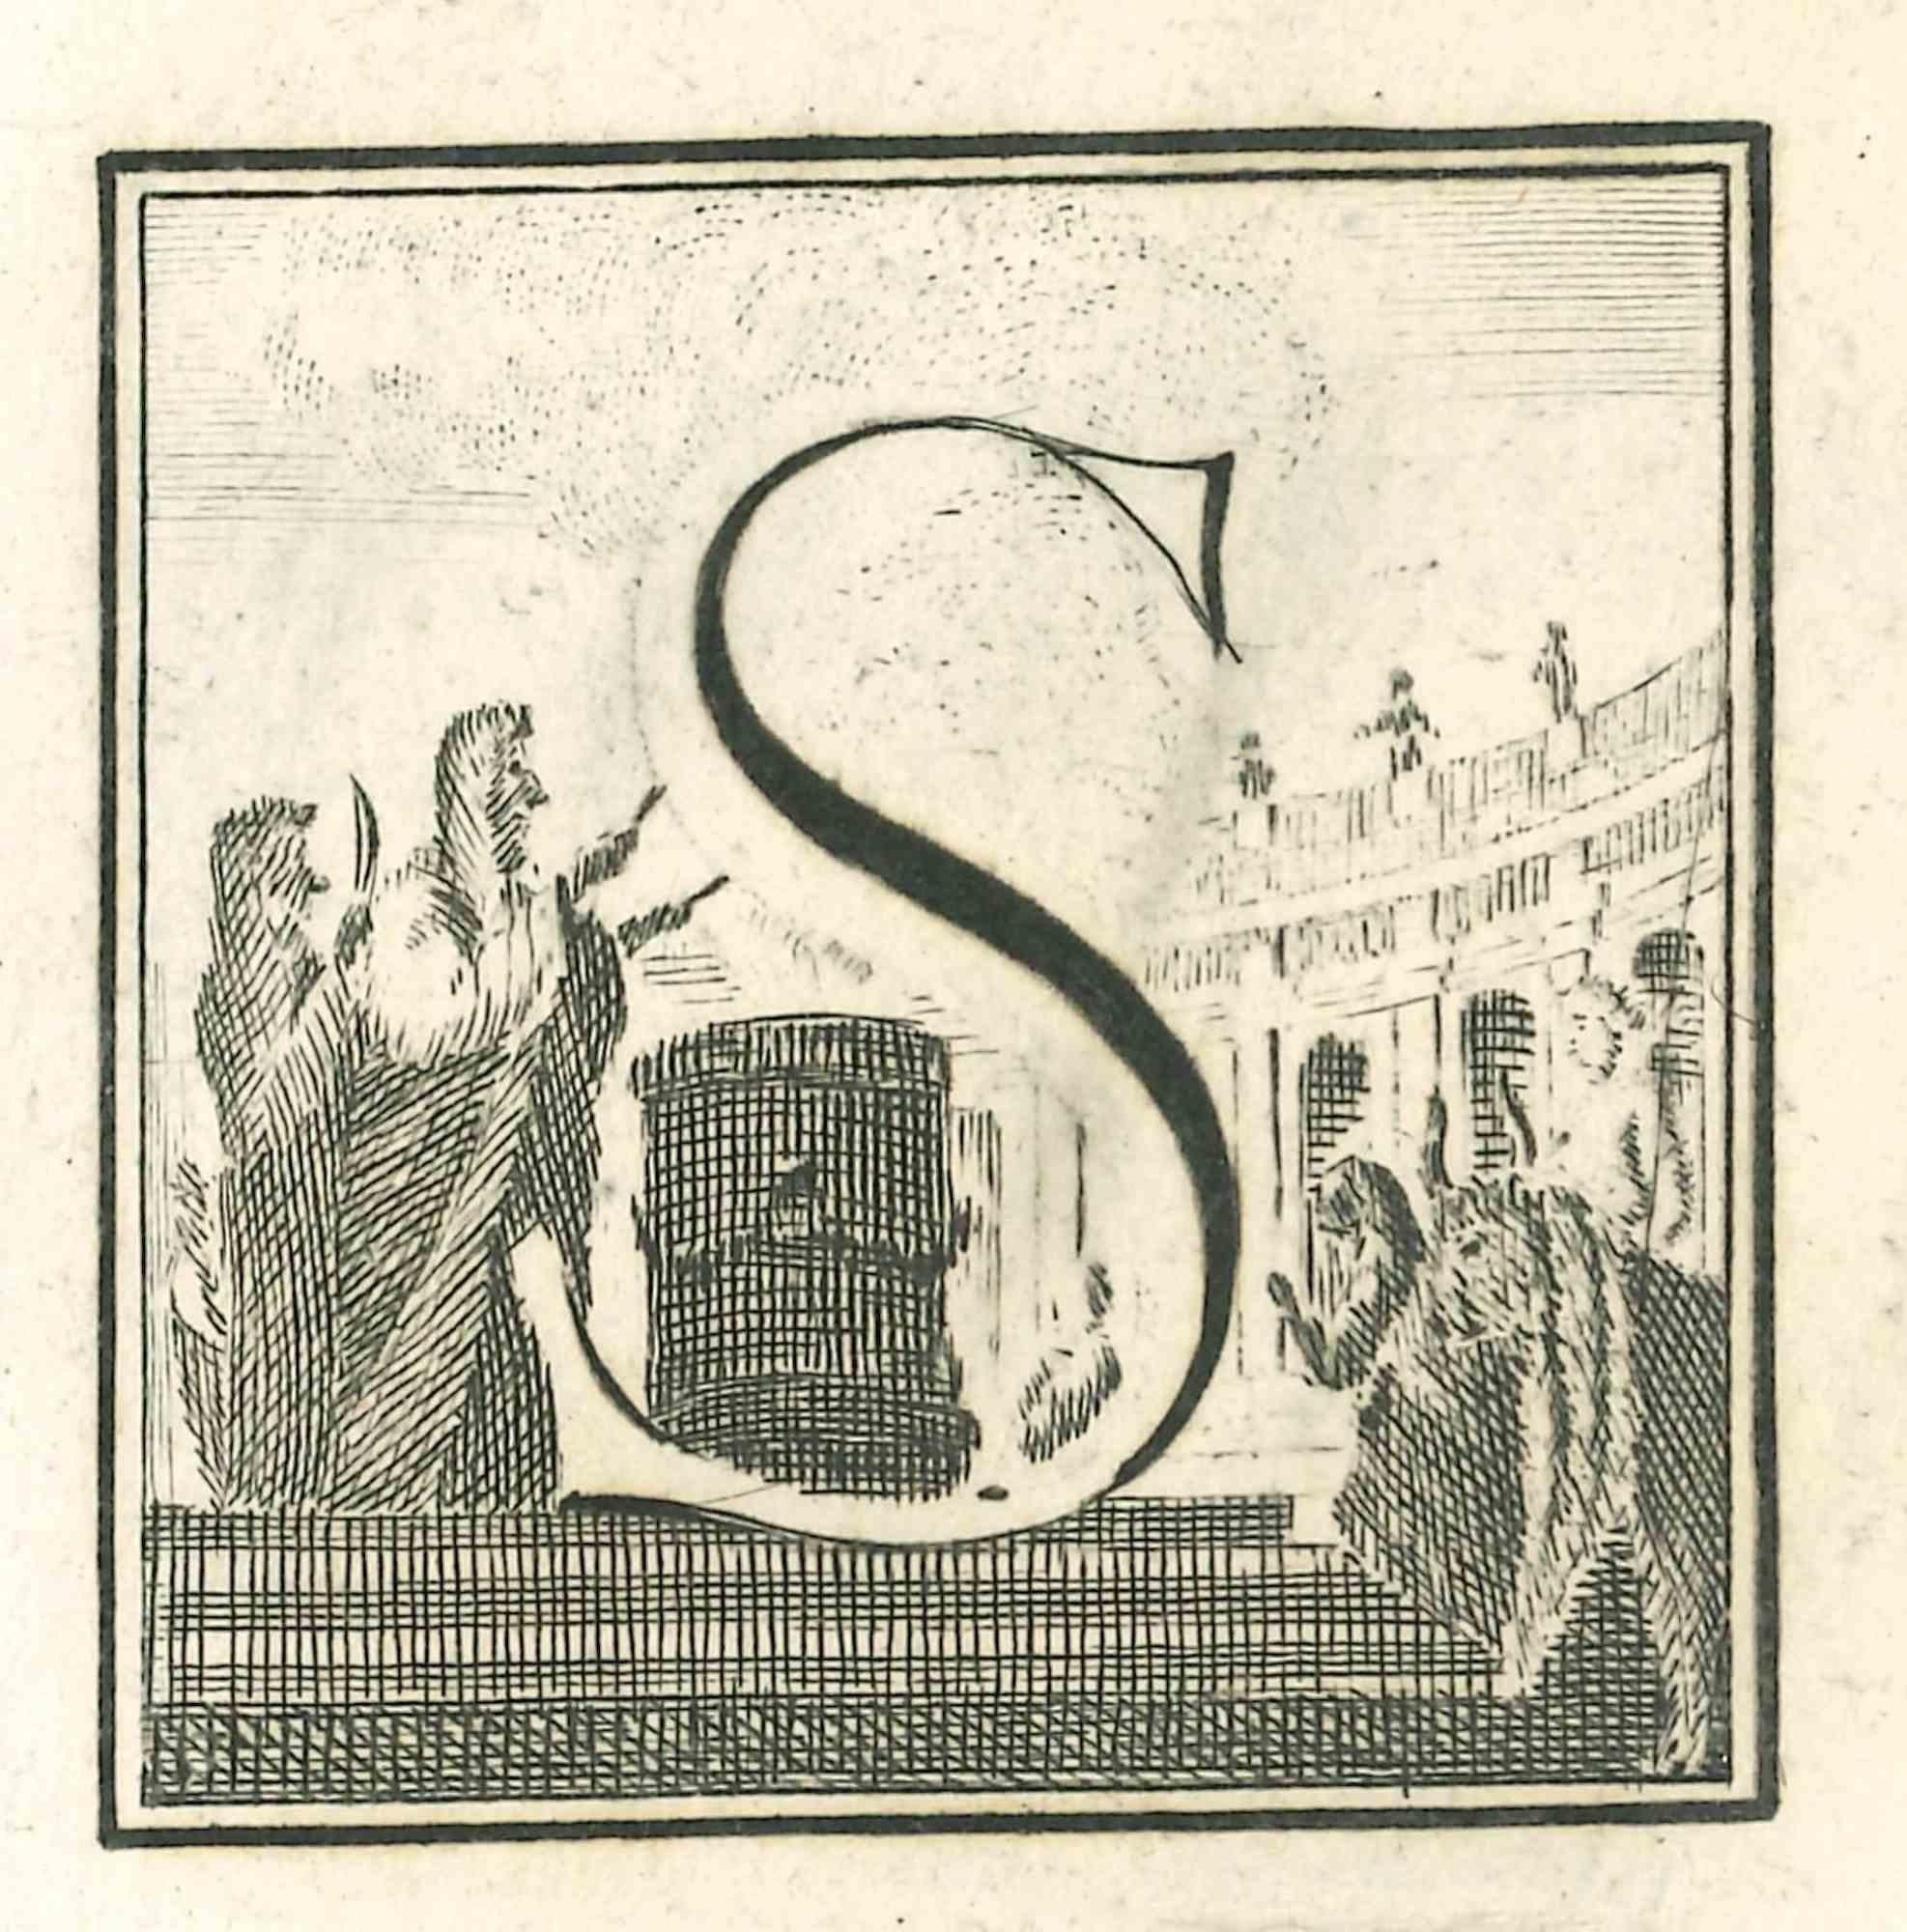 La lettre S est une gravure réalisée par Luigi Vanvitelli, artiste du XVIIIe siècle.

La gravure appartient à la suite d'estampes "Antiquités d'Herculanum exposées" (titre original : "Le Antichità di Ercolano Esposte"), un volume de huit gravures